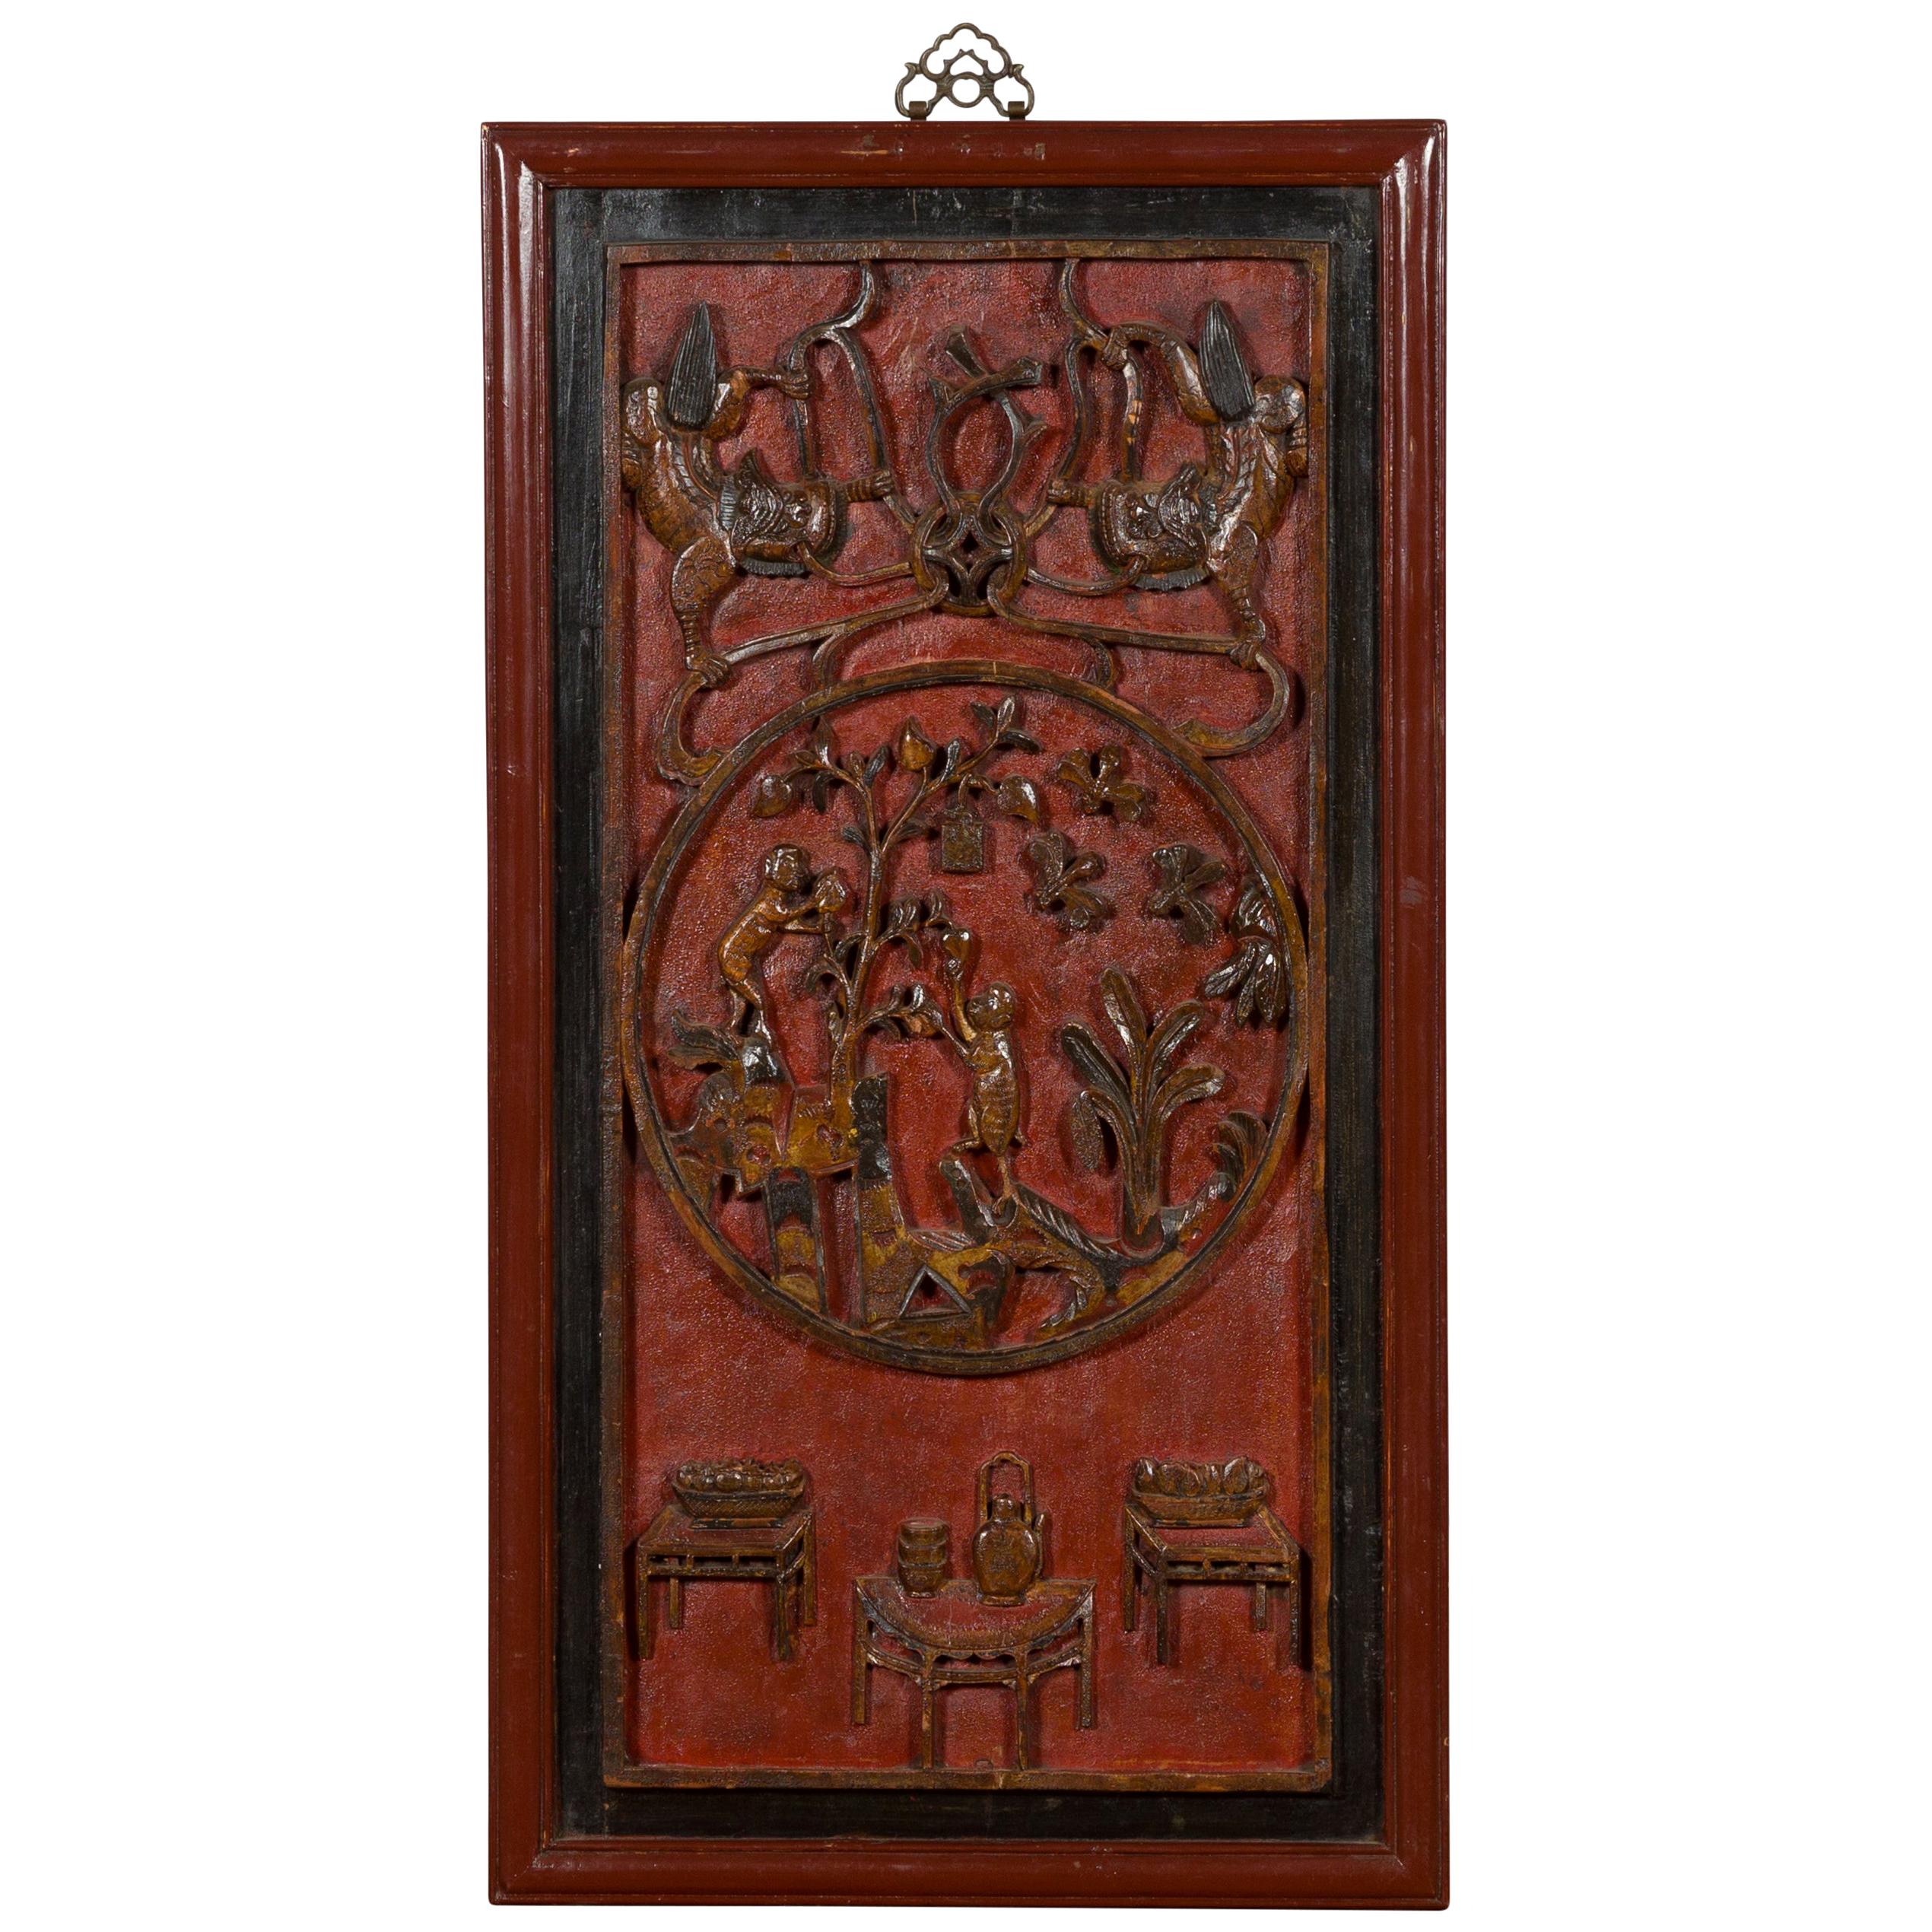 Panneau sculpté de la dynastie chinoise Qing du 19e siècle en laque rouge, noire et brune